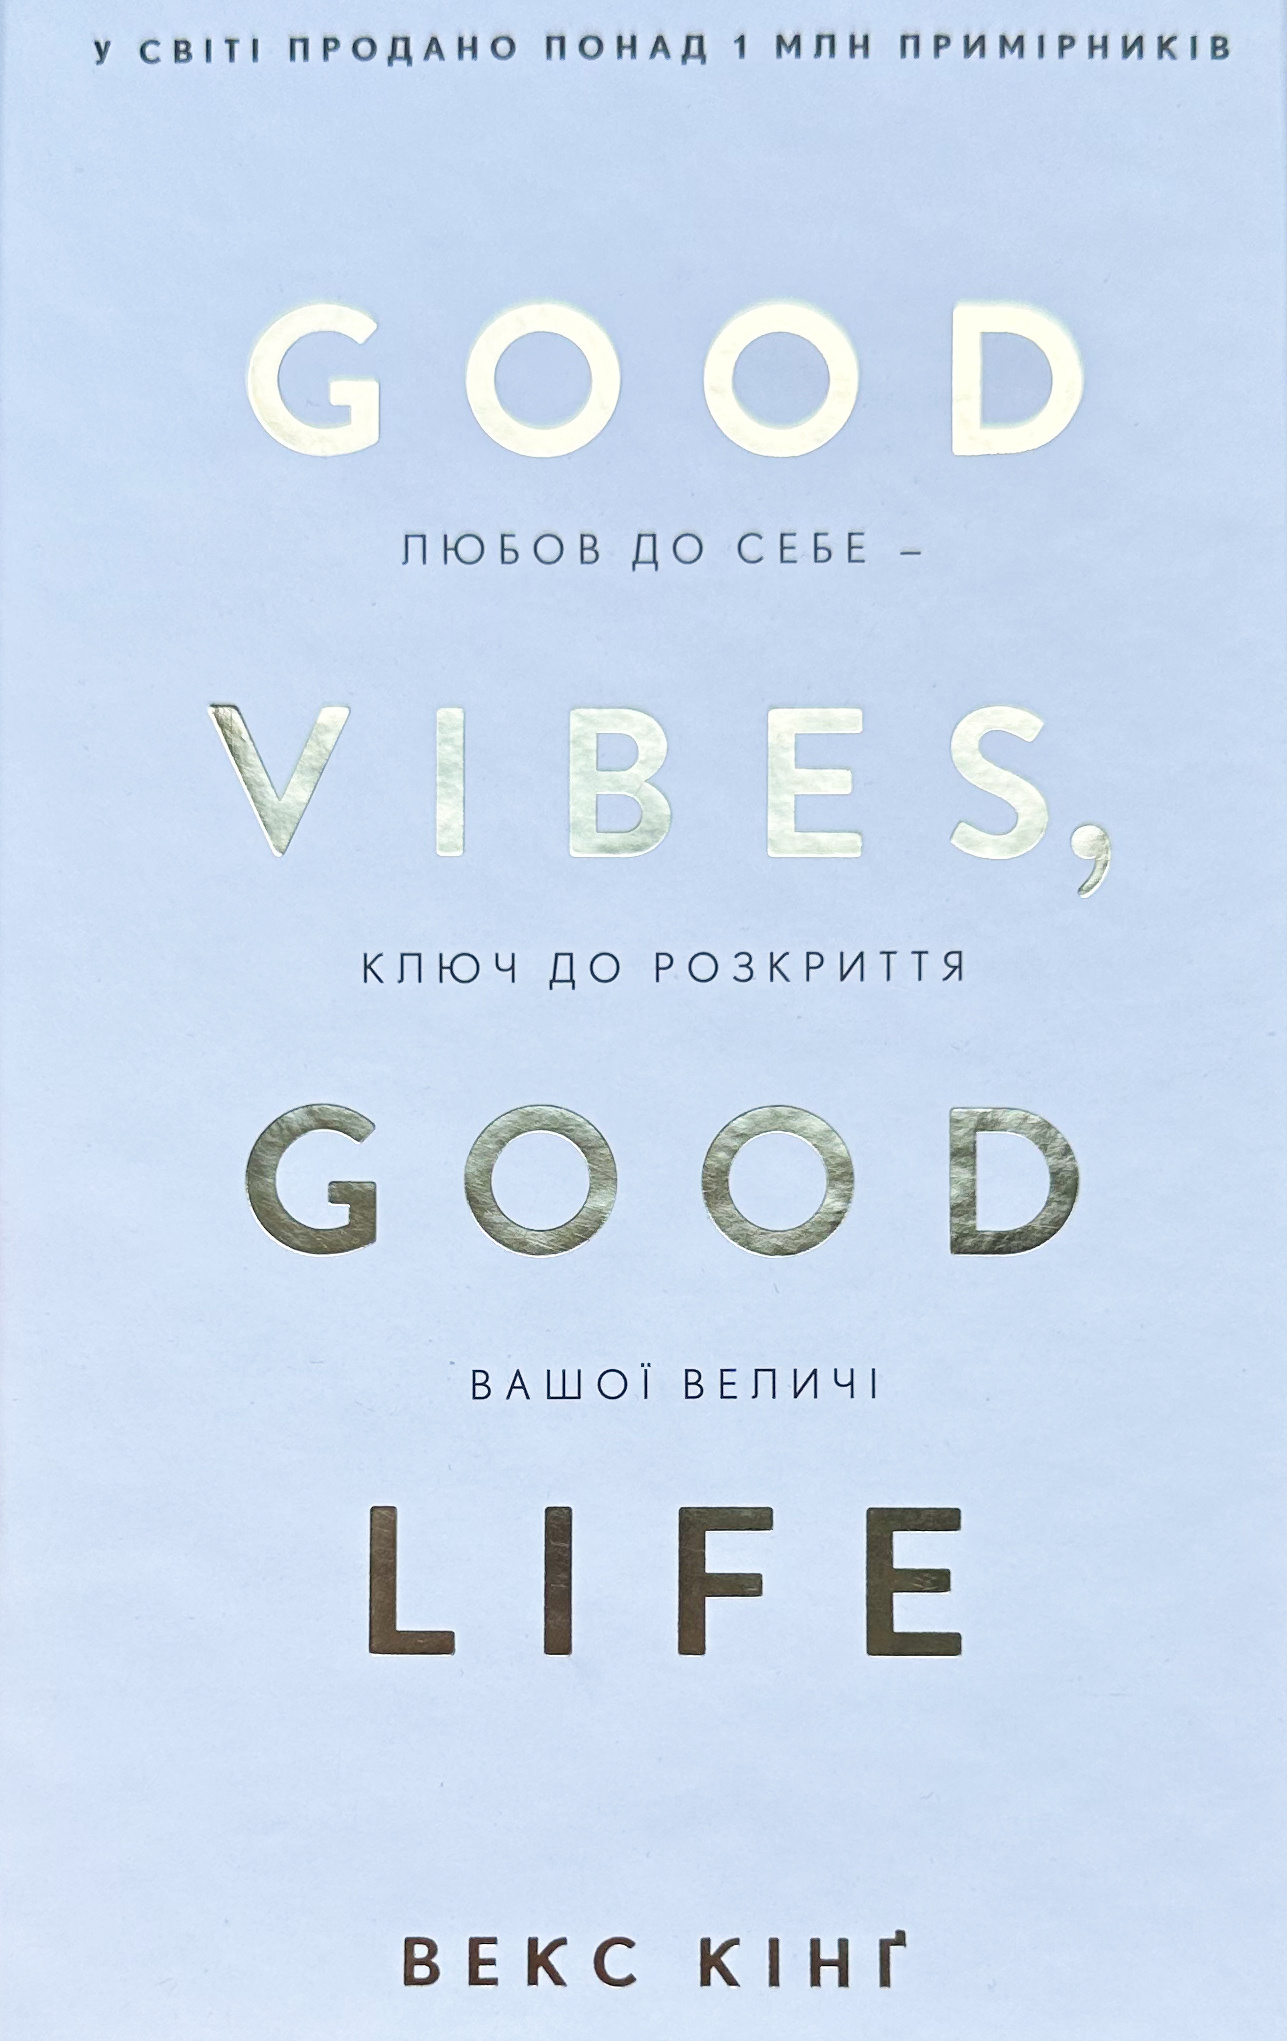 Good Vibes, Good Life. Любов до себе - ключ до розкриття вашої величі